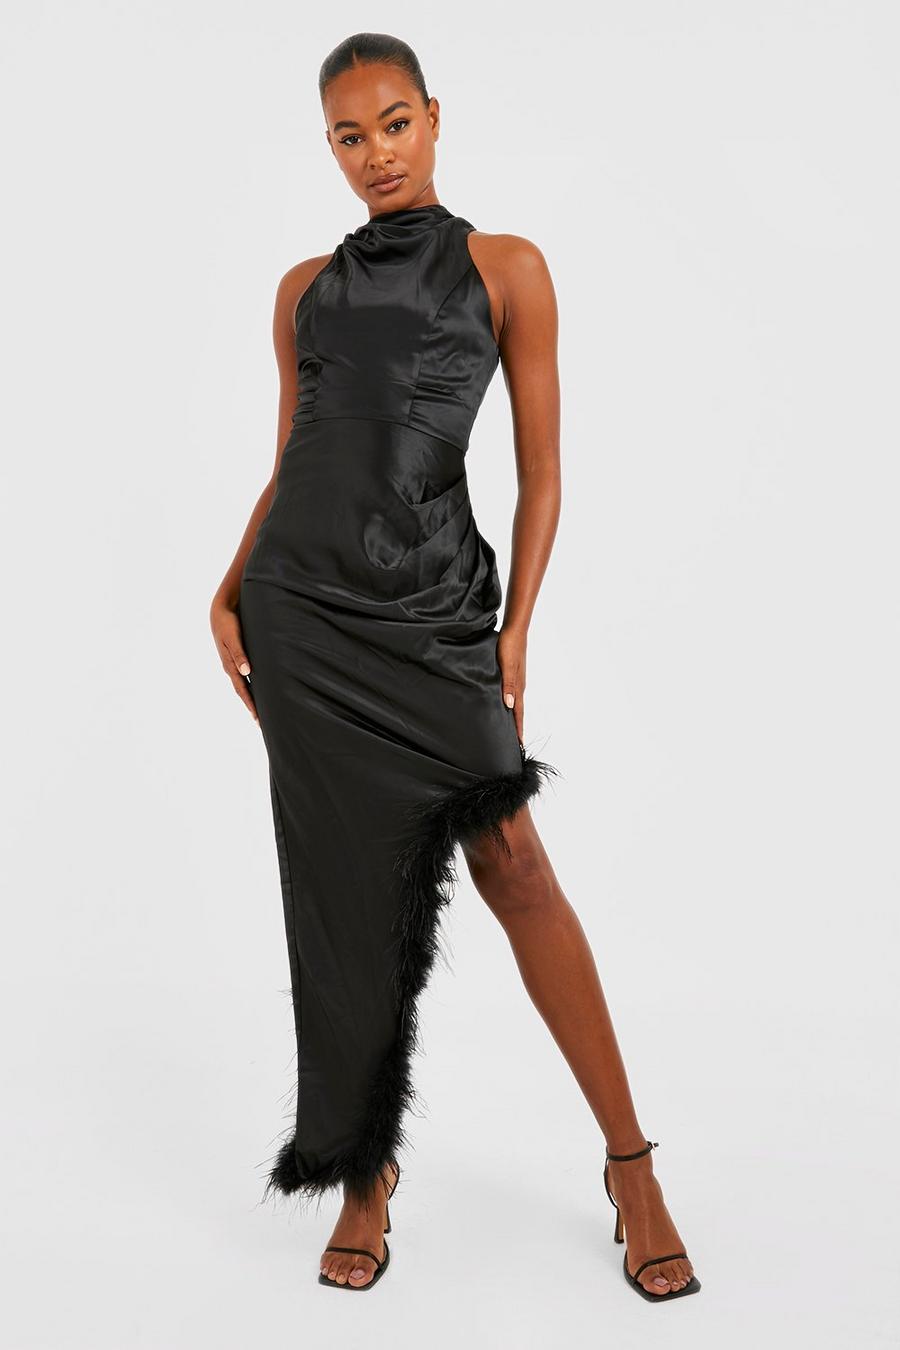 שחור שמלת סאטן עם צווארון גבוה ועיטור נוצות, לנשים גבוהות image number 1